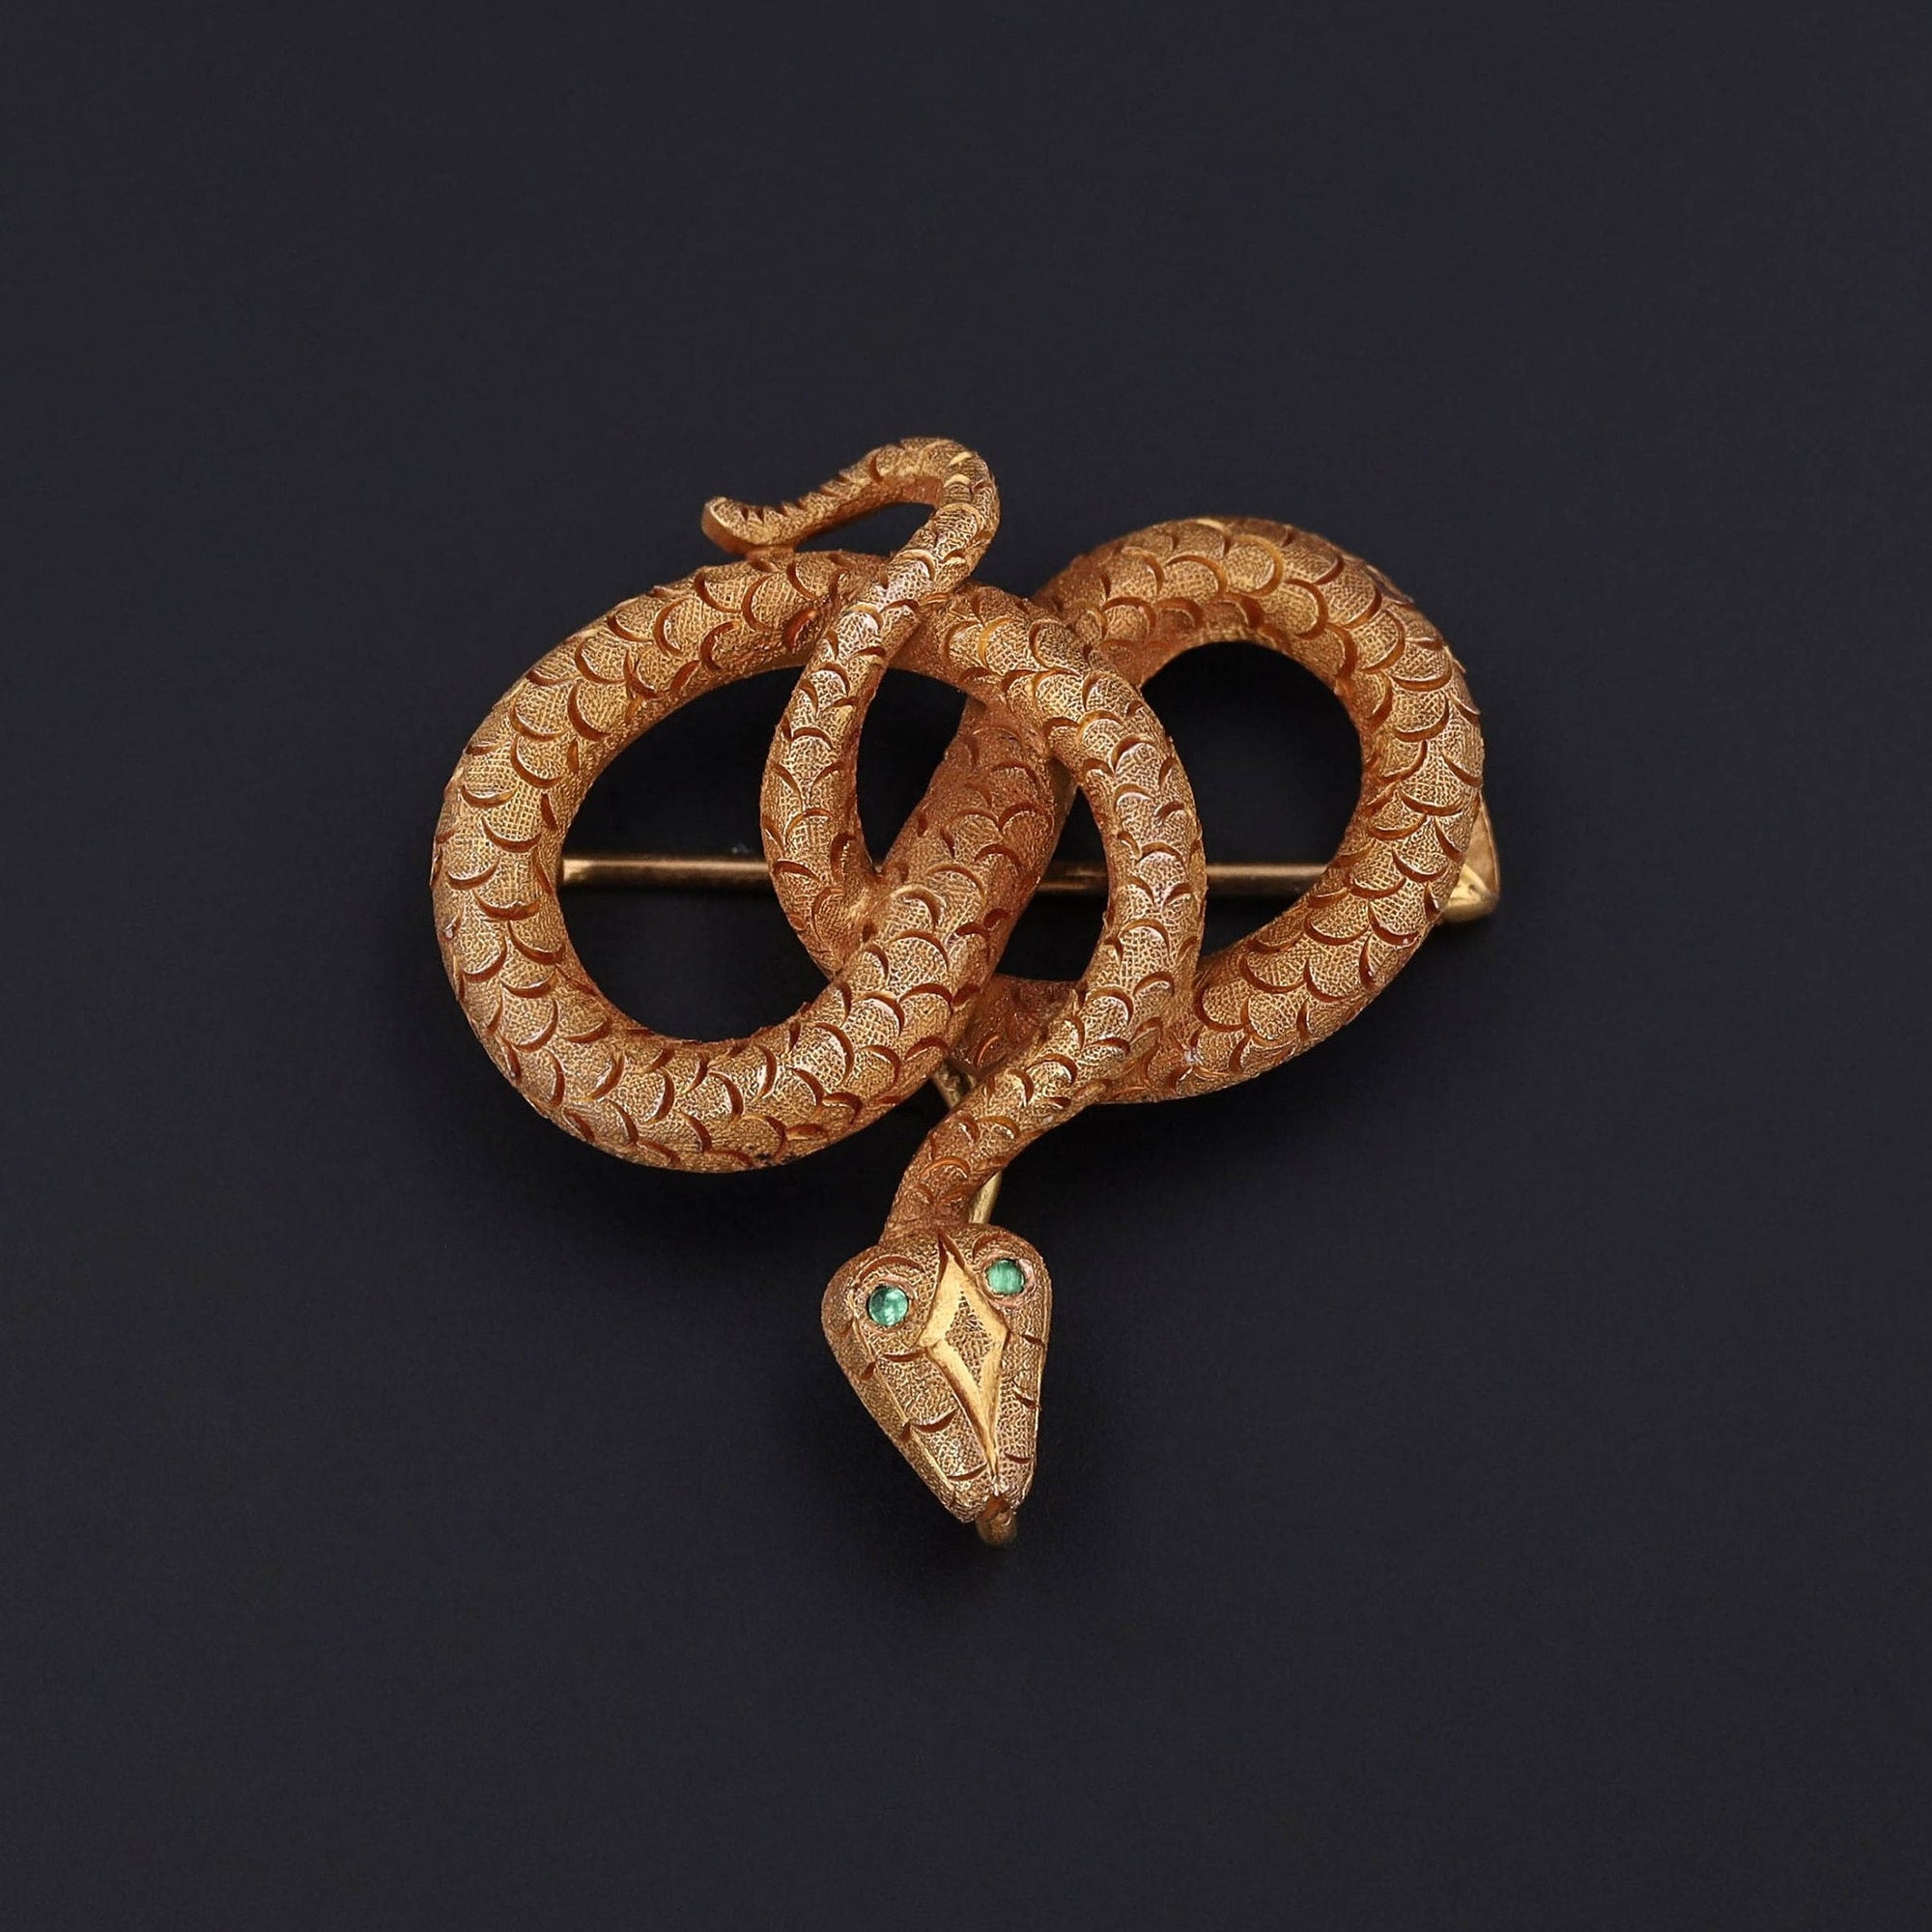 Antique Snake Brooch of 14k Gold